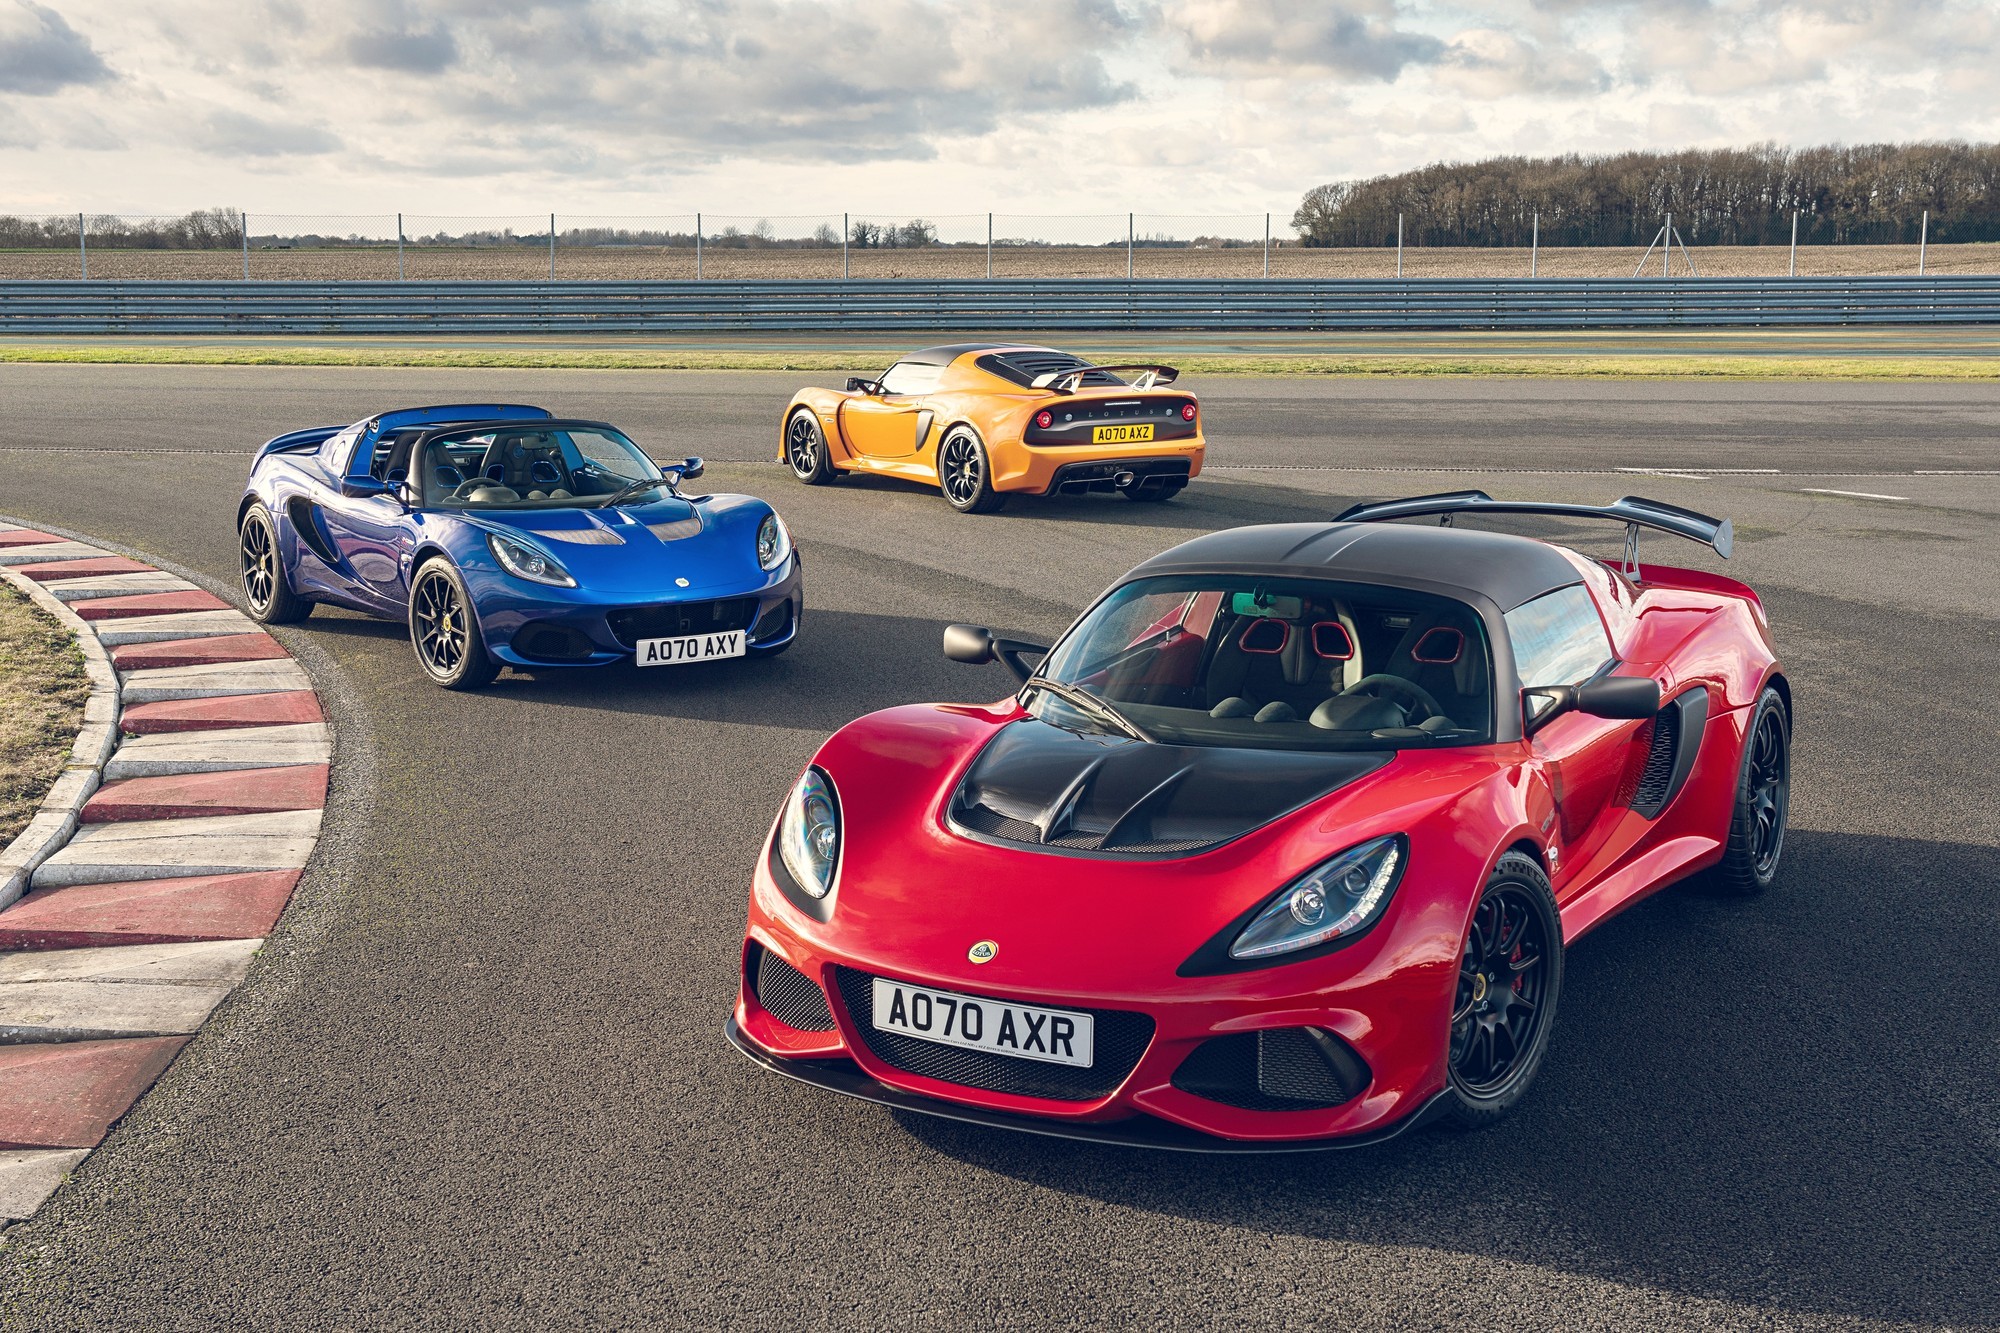 Lotus Lotus Cars: